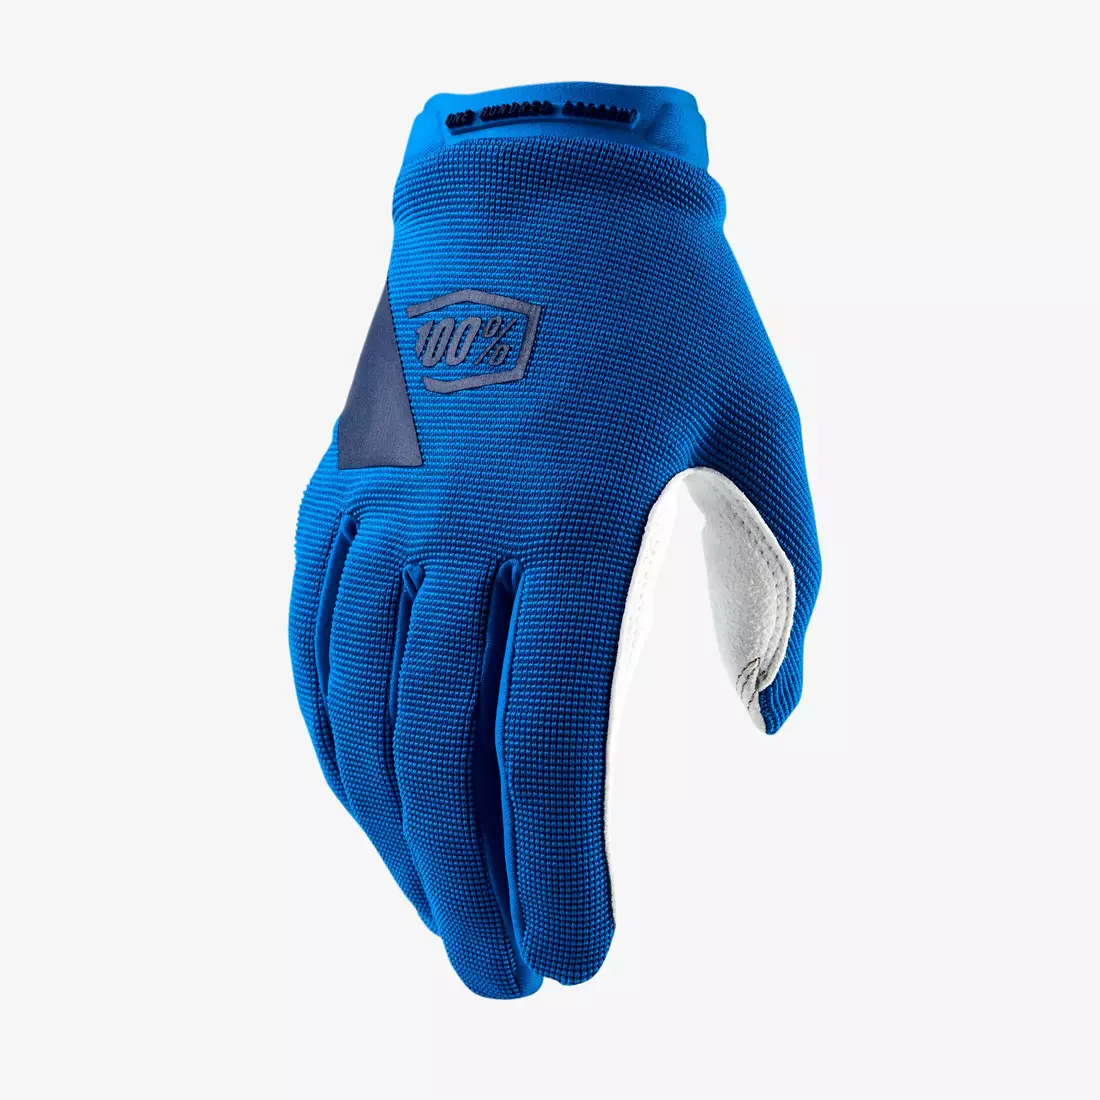 100% damskie rękawiczki rowerowe ridecamp niebieskie STO-11018-002-10